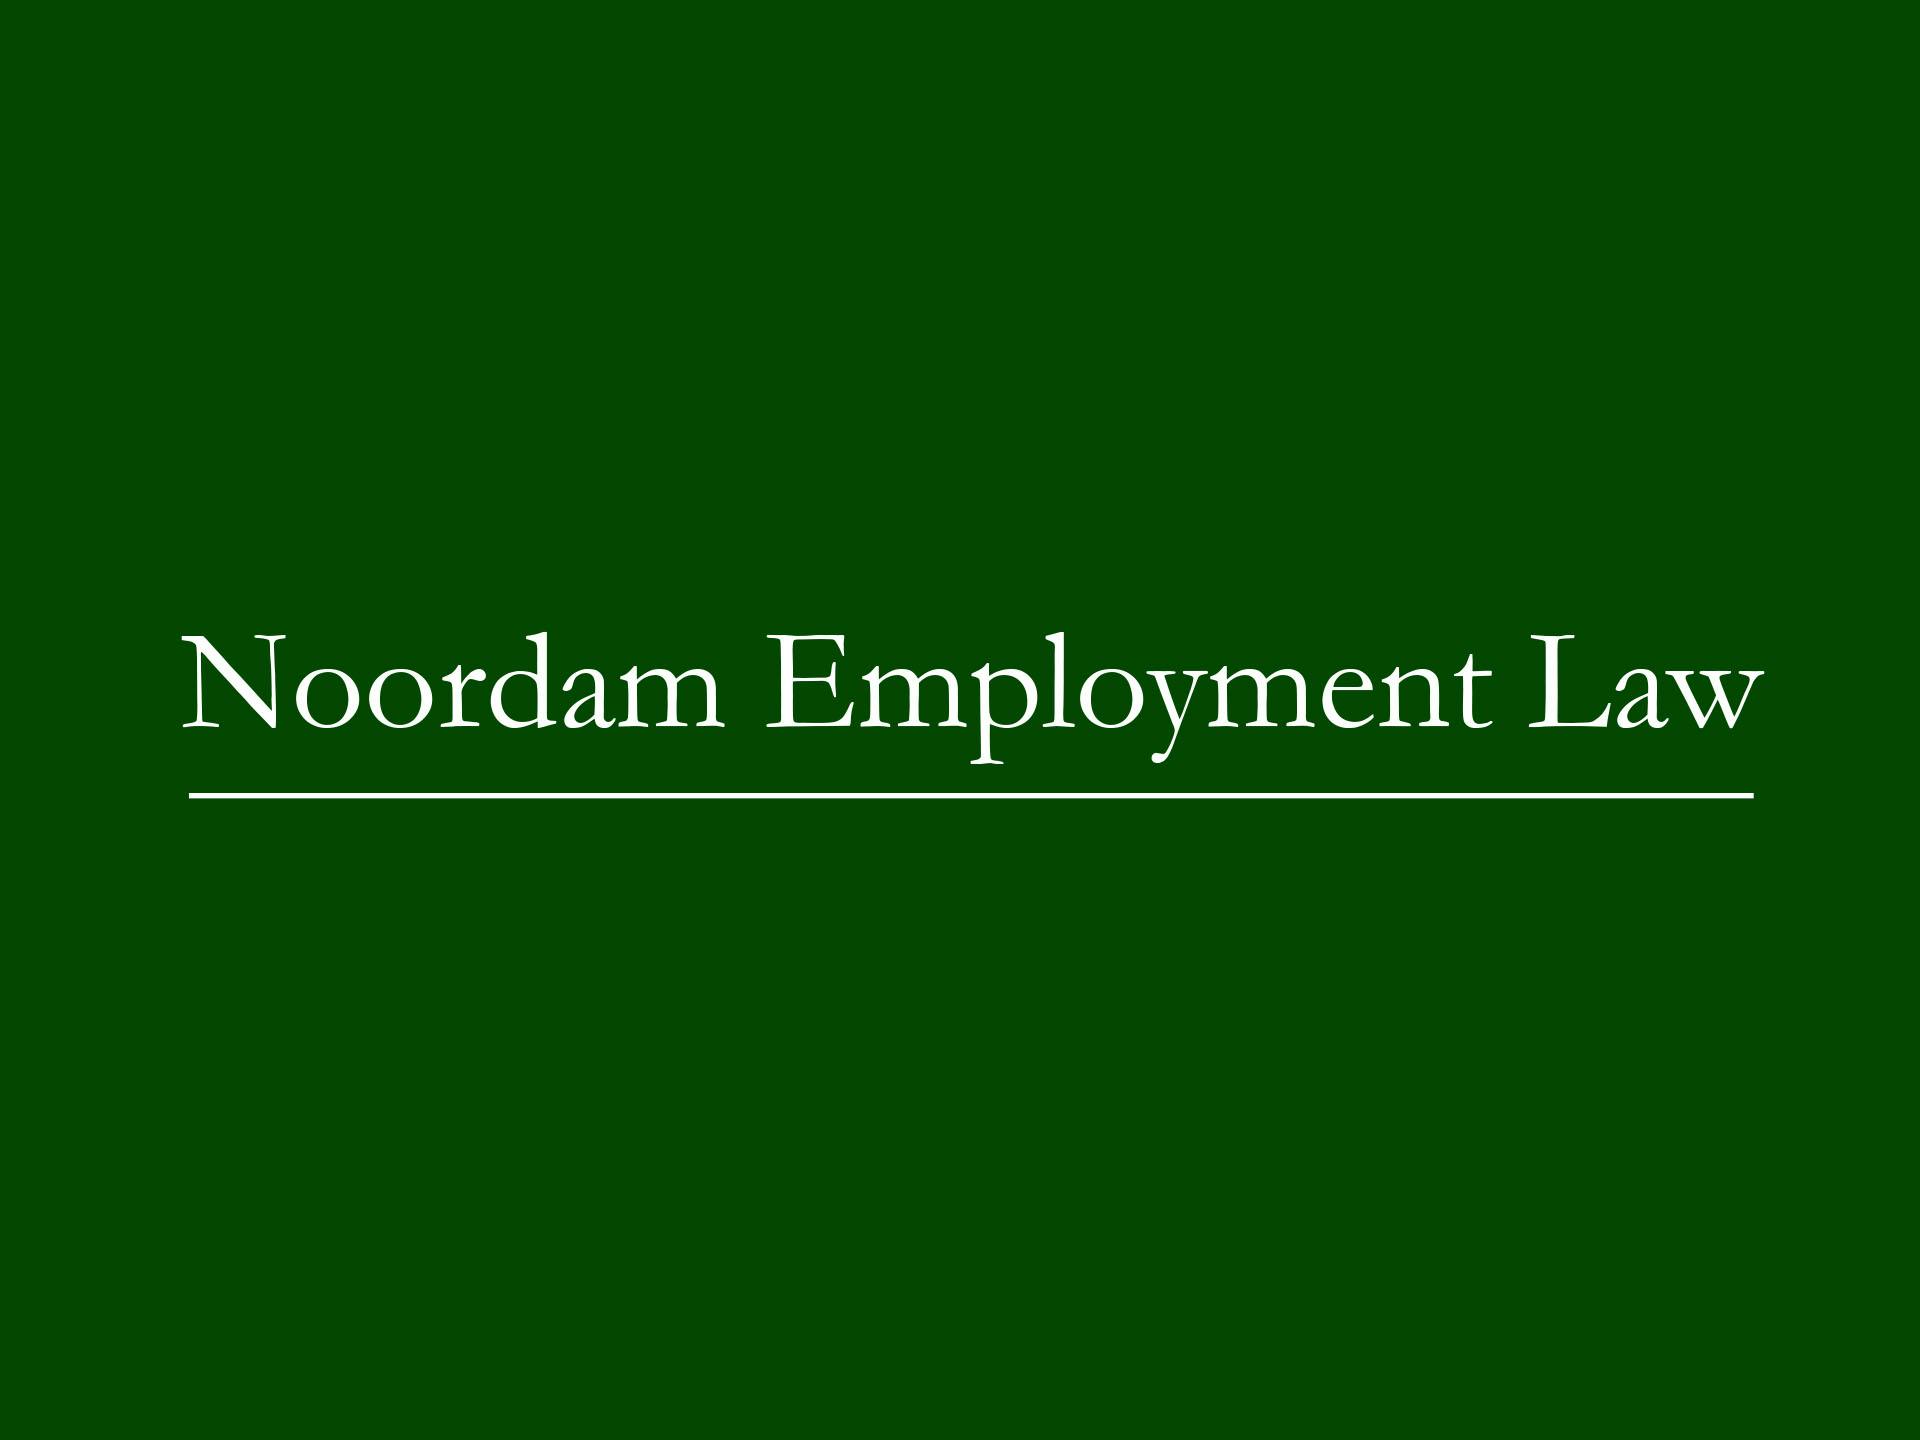 Noordam Employment Law